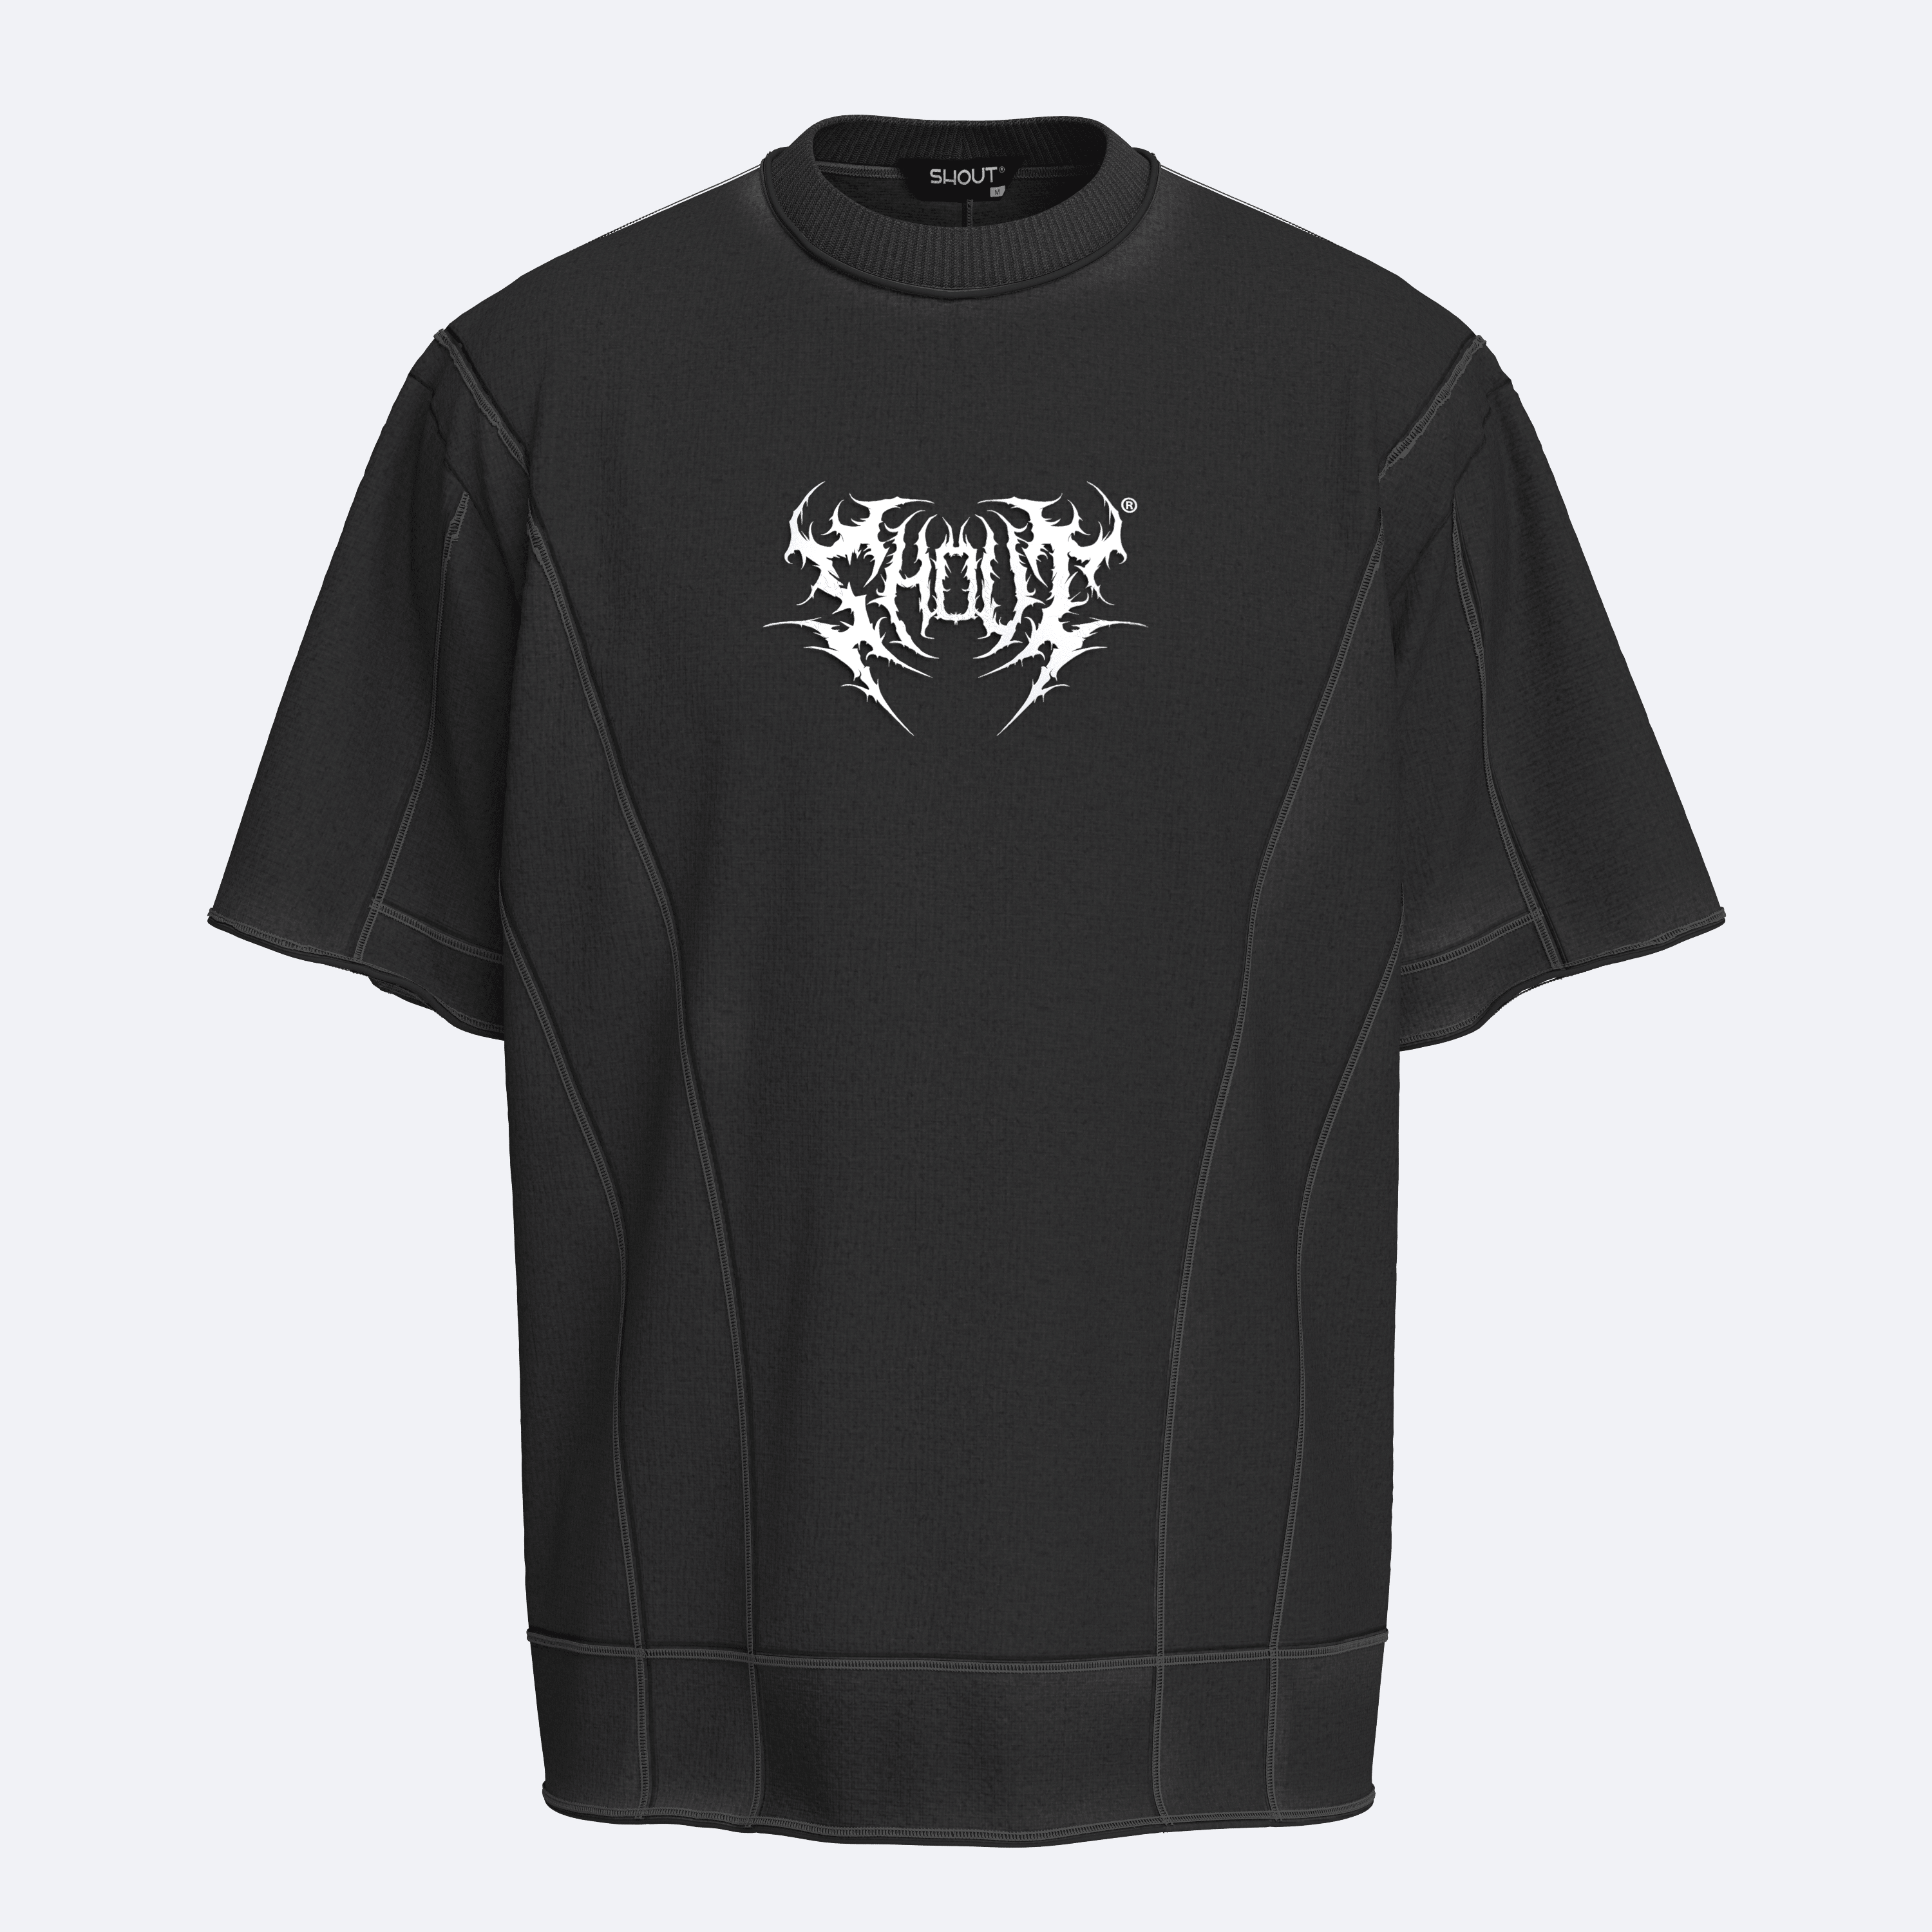 Shout Oversize Limited Edition Premium Unisex T-Shirt